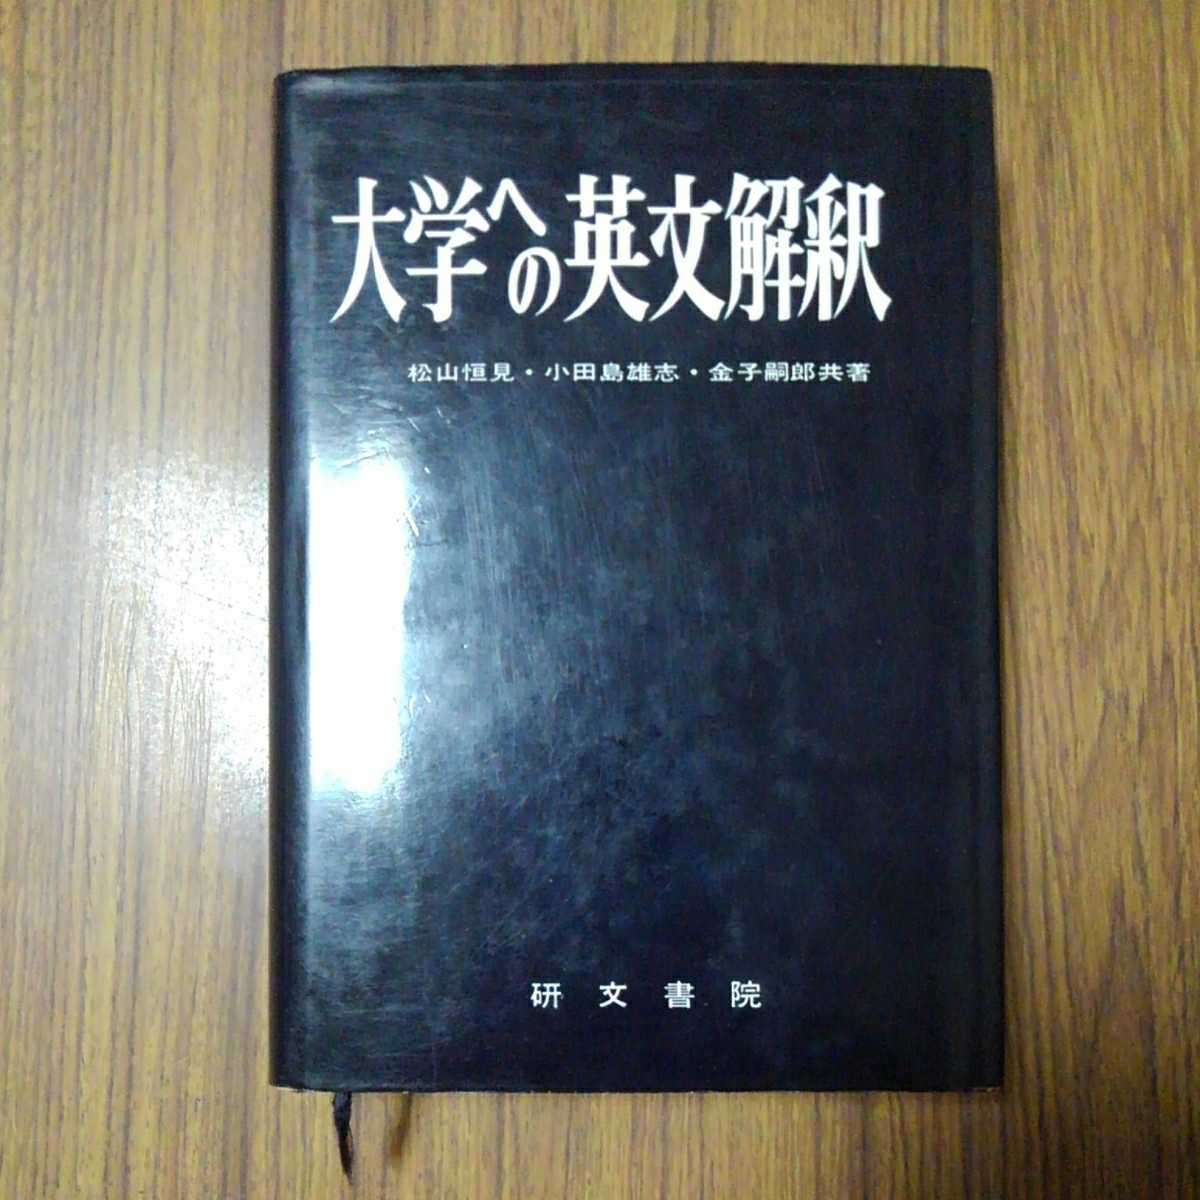 松山恒見・小田島雄志・金子嗣郎共著「大学への英文解釈」研文書院1977年31版